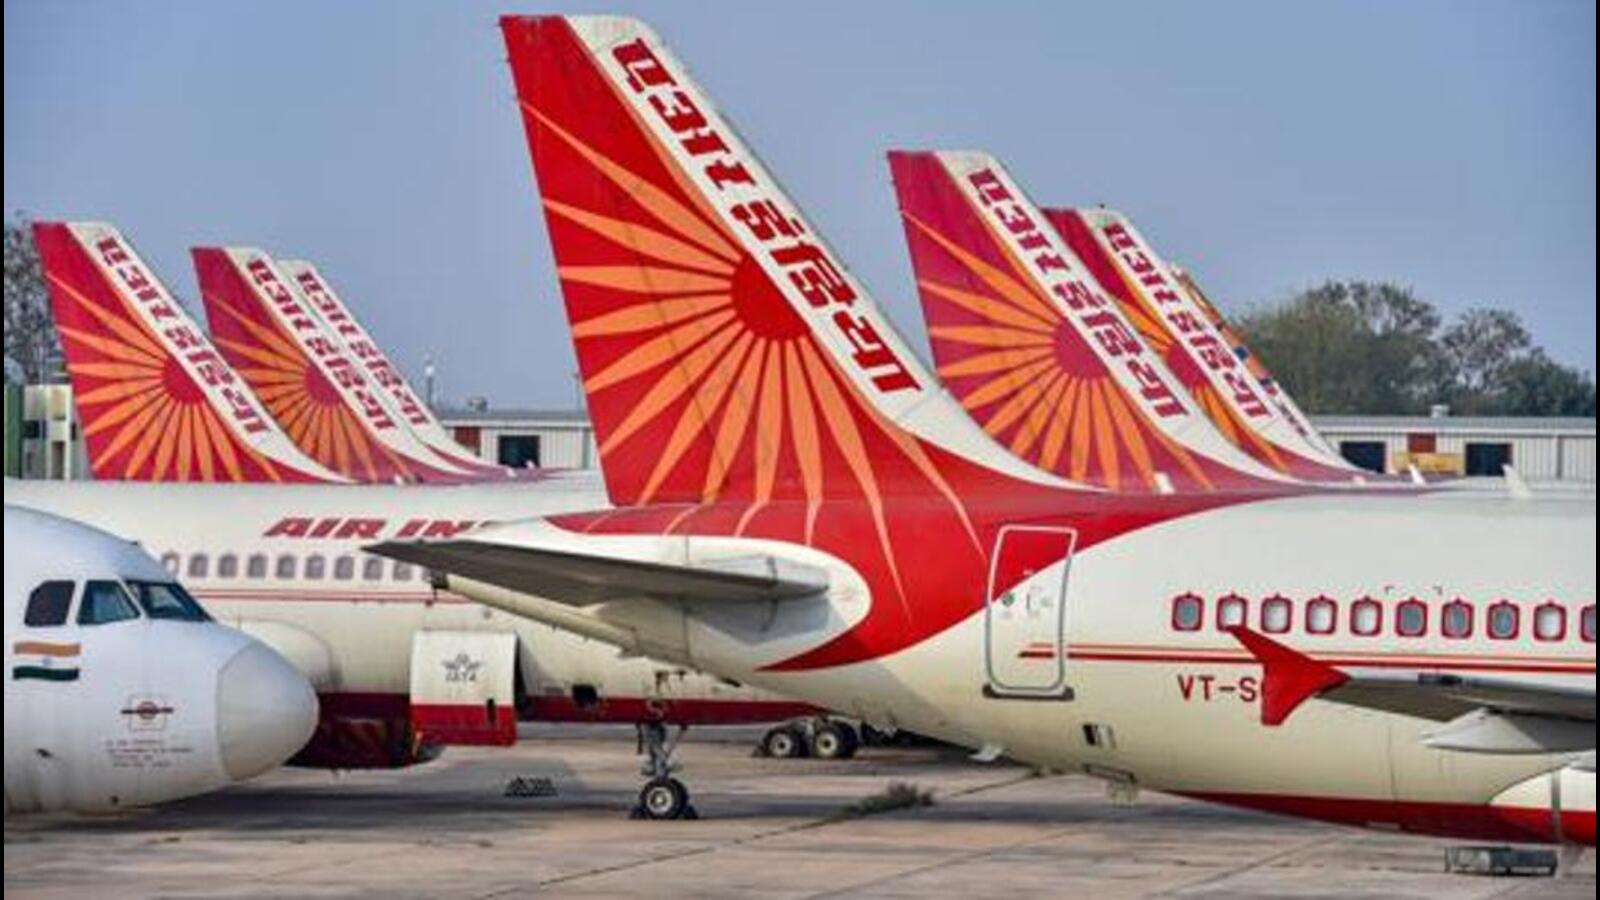 एयर इंडिया बर्मिंघम, लंदन, सैन फ्रांसिस्को के लिए 20 और साप्ताहिक उड़ानें शुरू करेगी